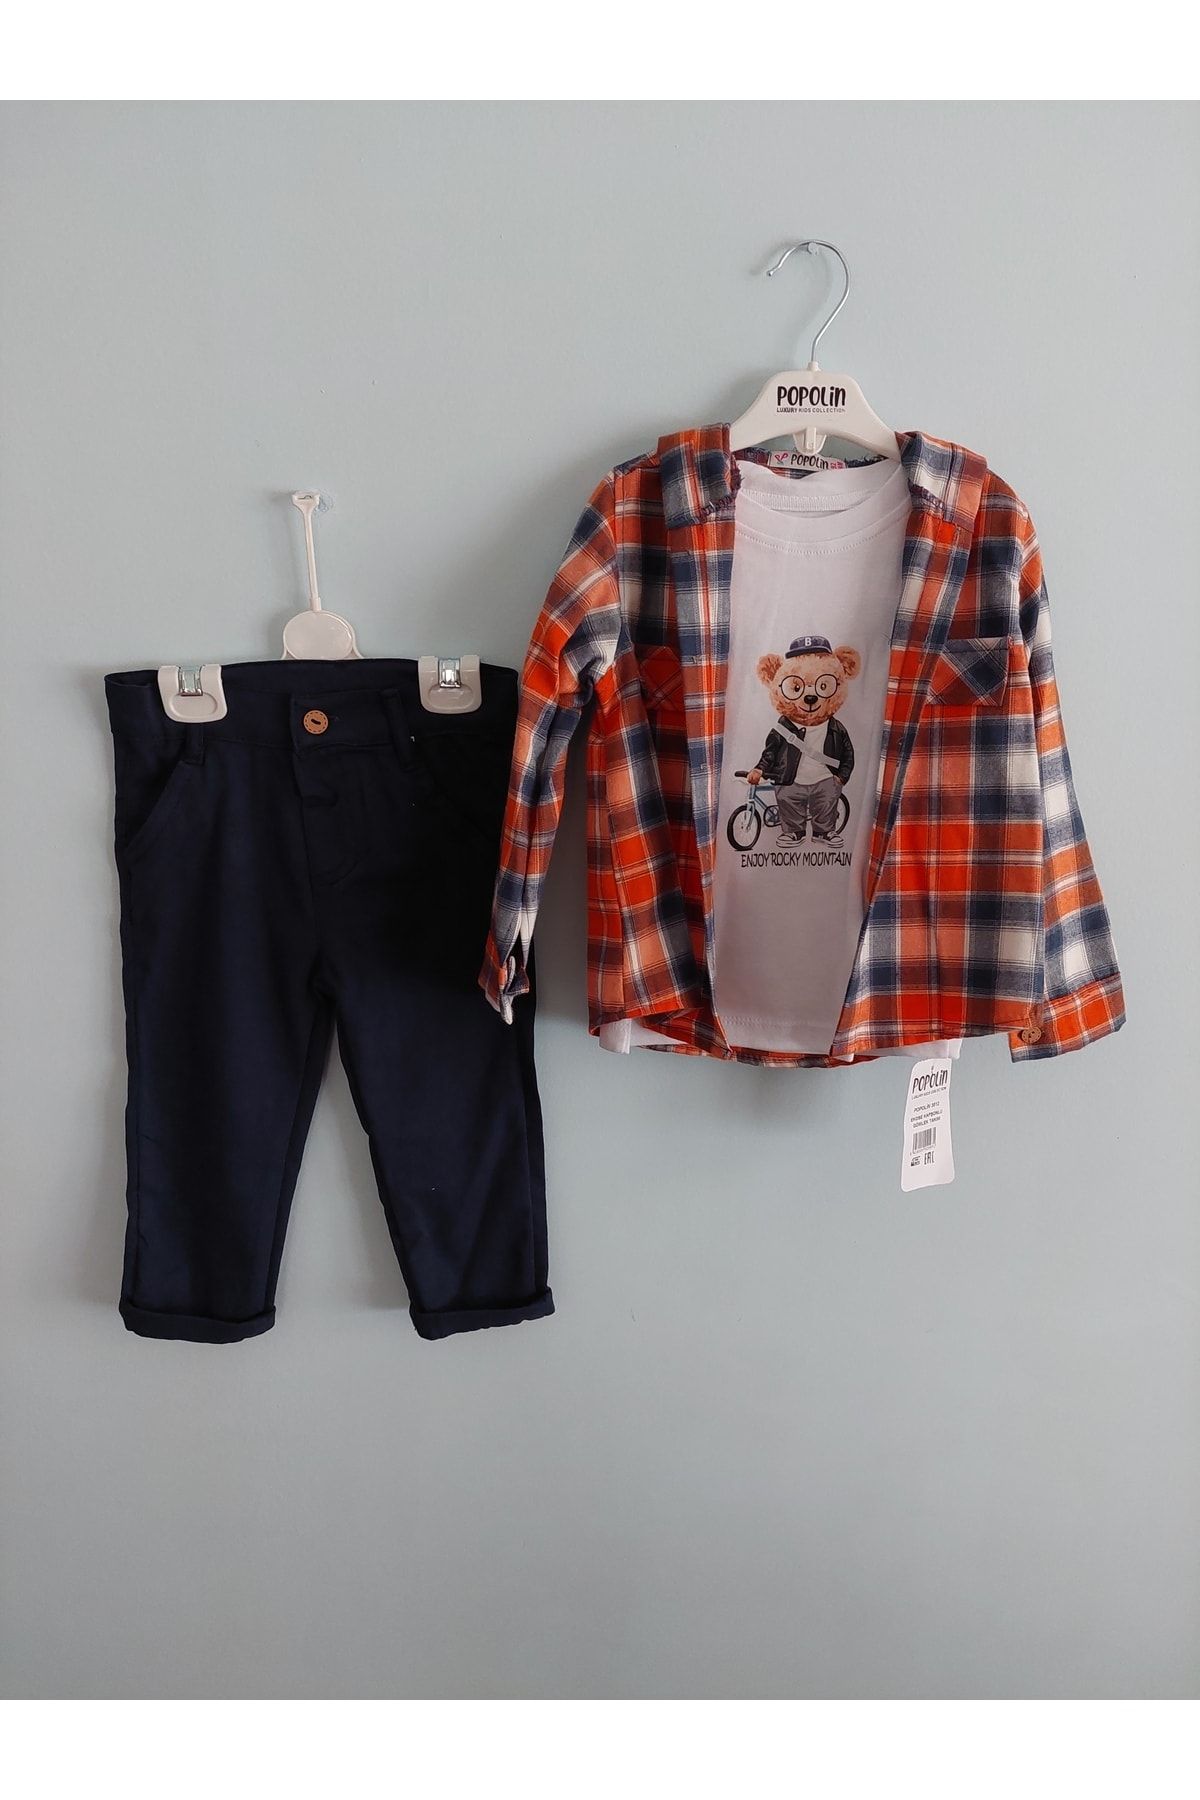 Popolin Erkek Bebek Ekose Kapüşonlu Gömlek, Tşört, Pantolon Takım,